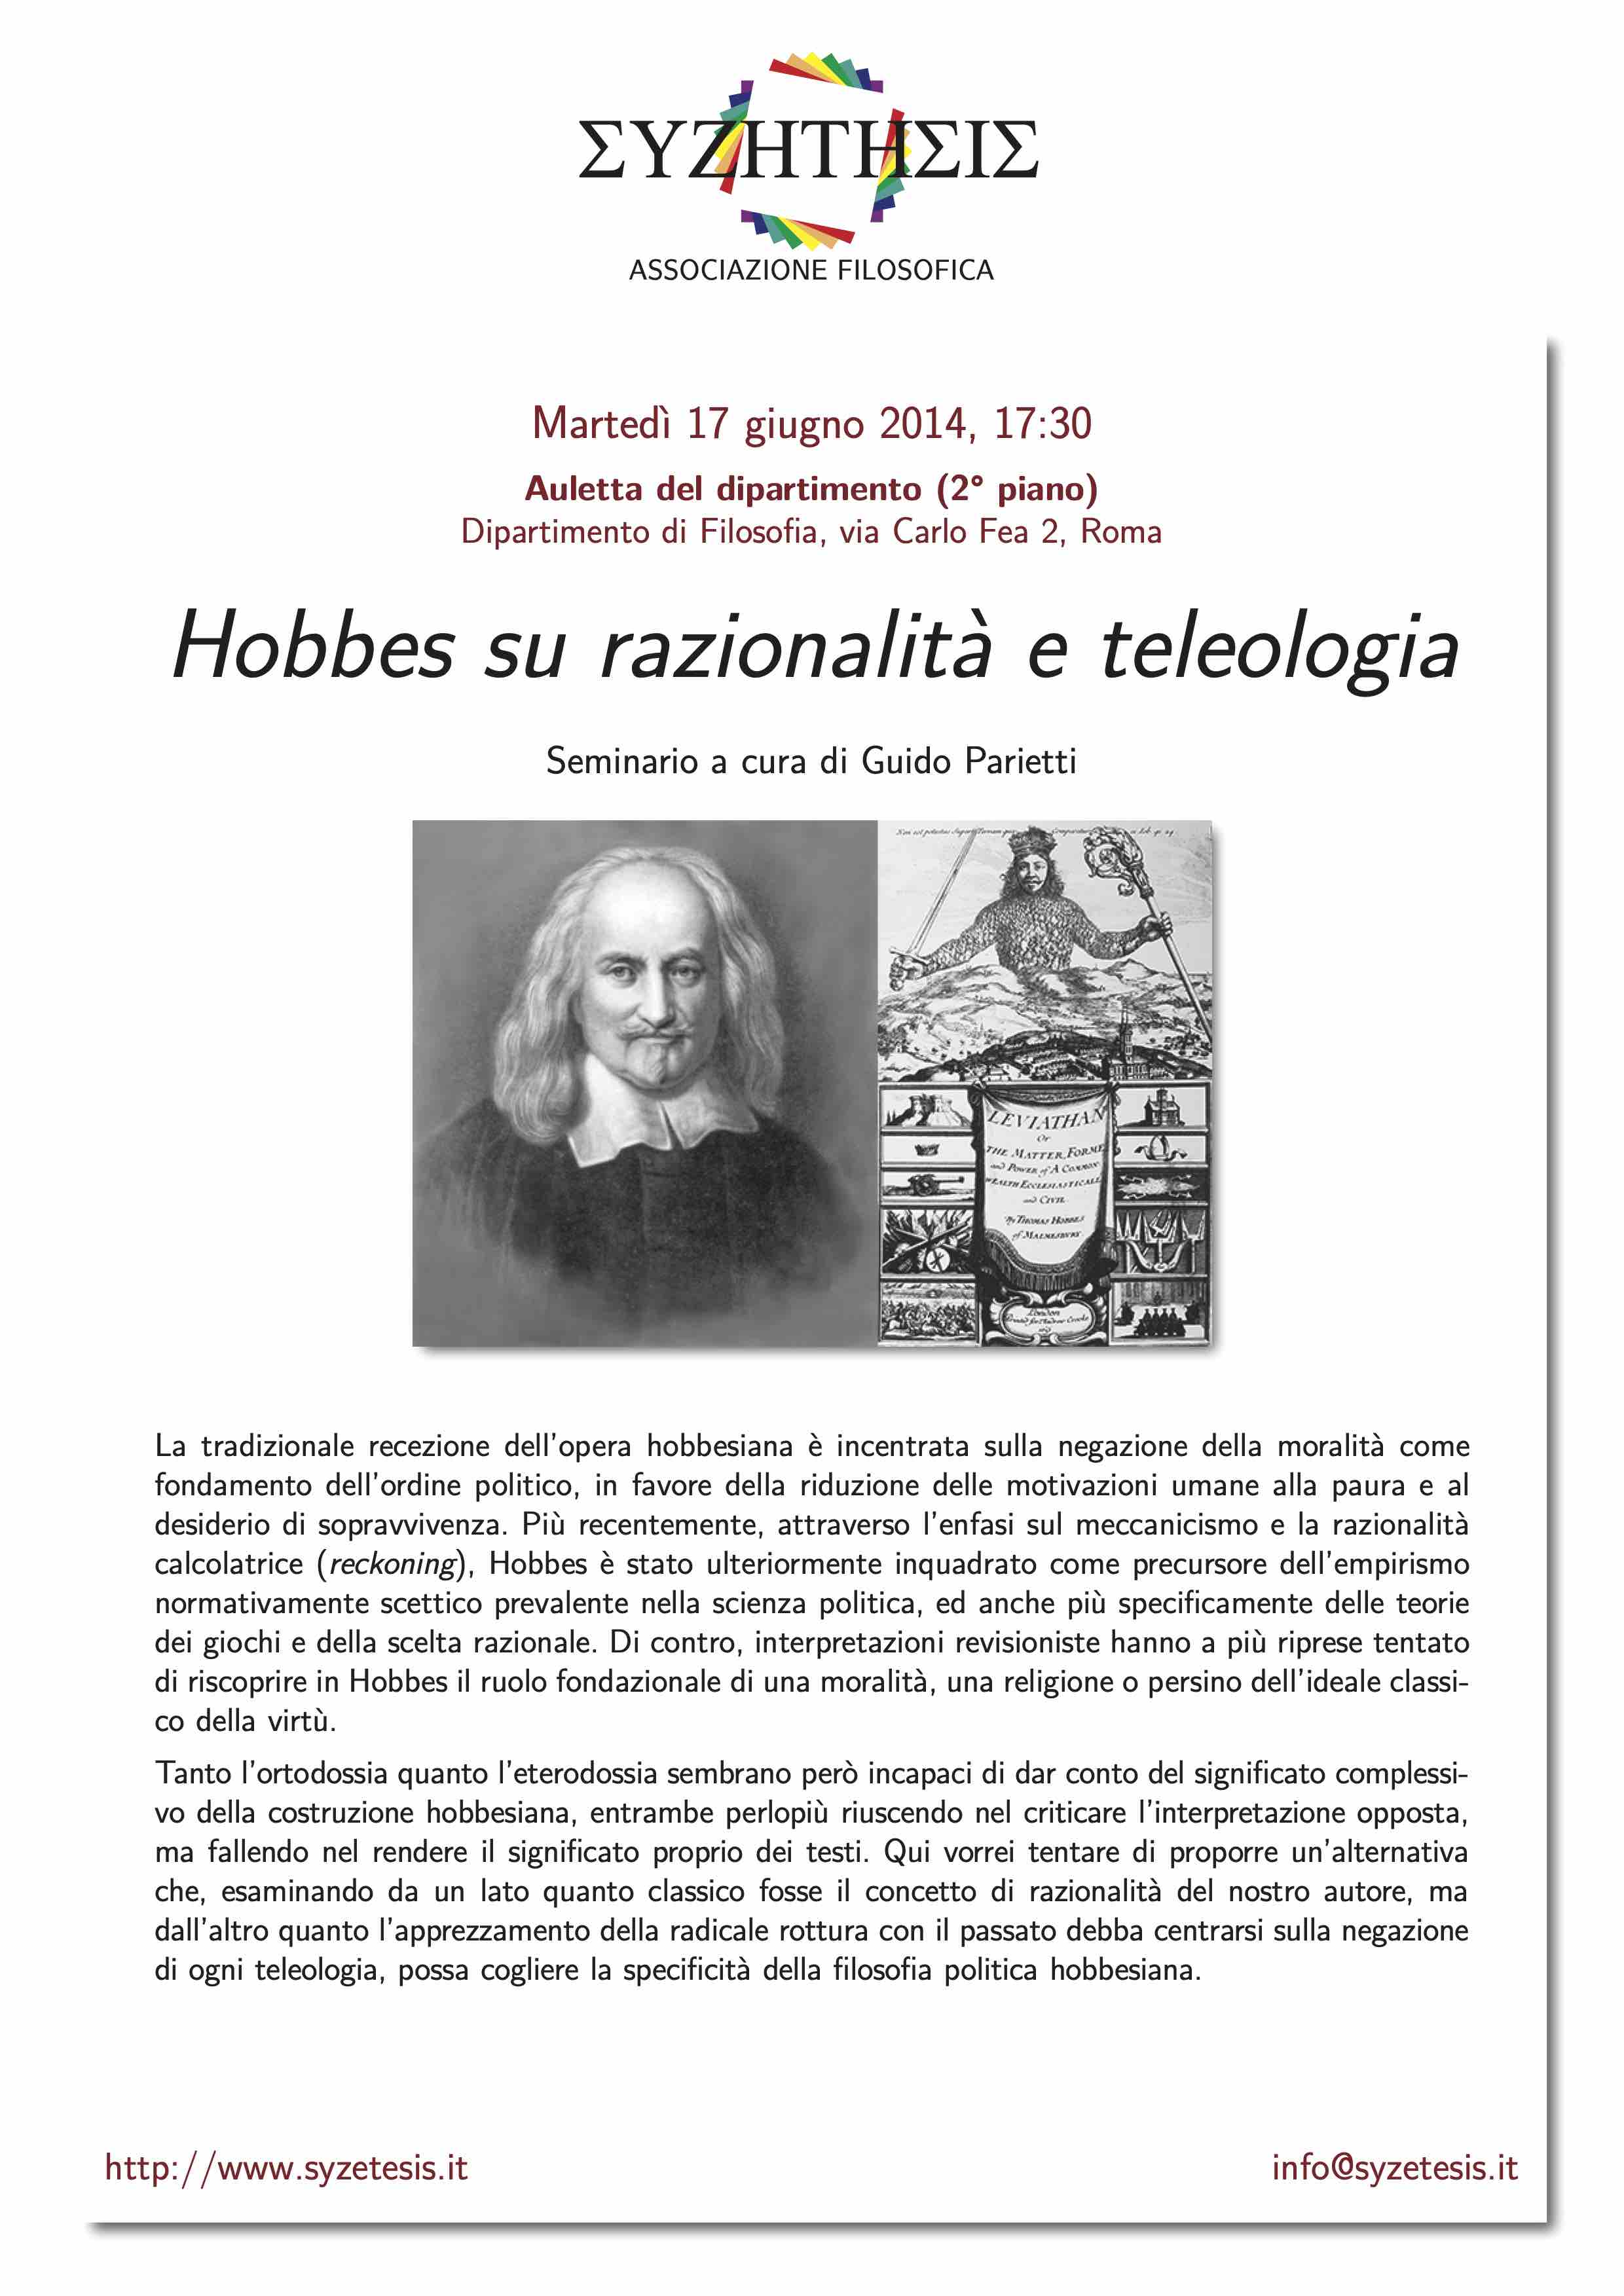 Hobbes su razionalità e teleologia